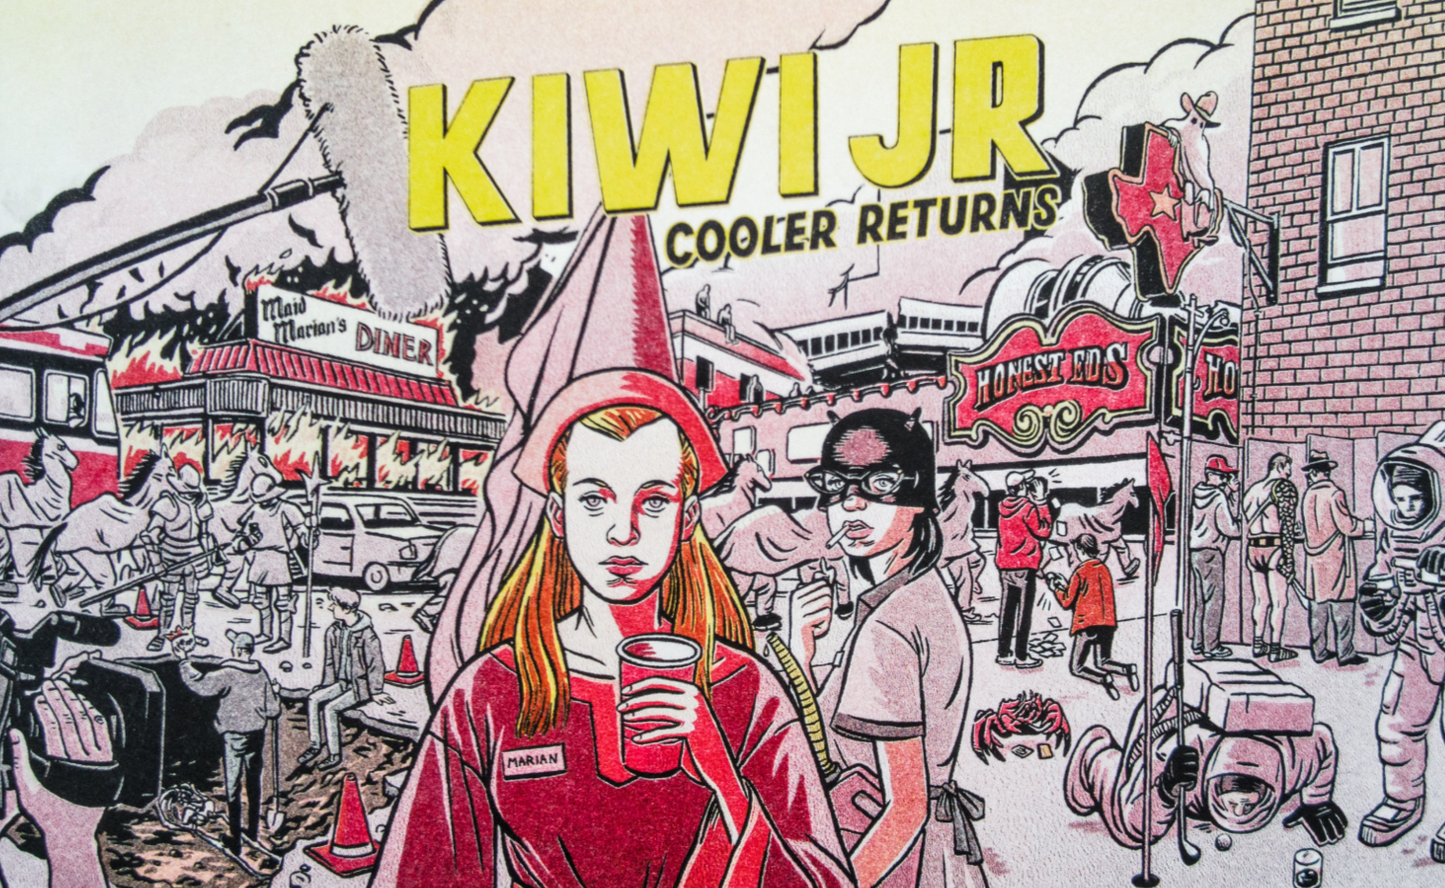 Kiwi Jr. "Cooler Returns" Lyric Zine by Dmitry Bondarenko